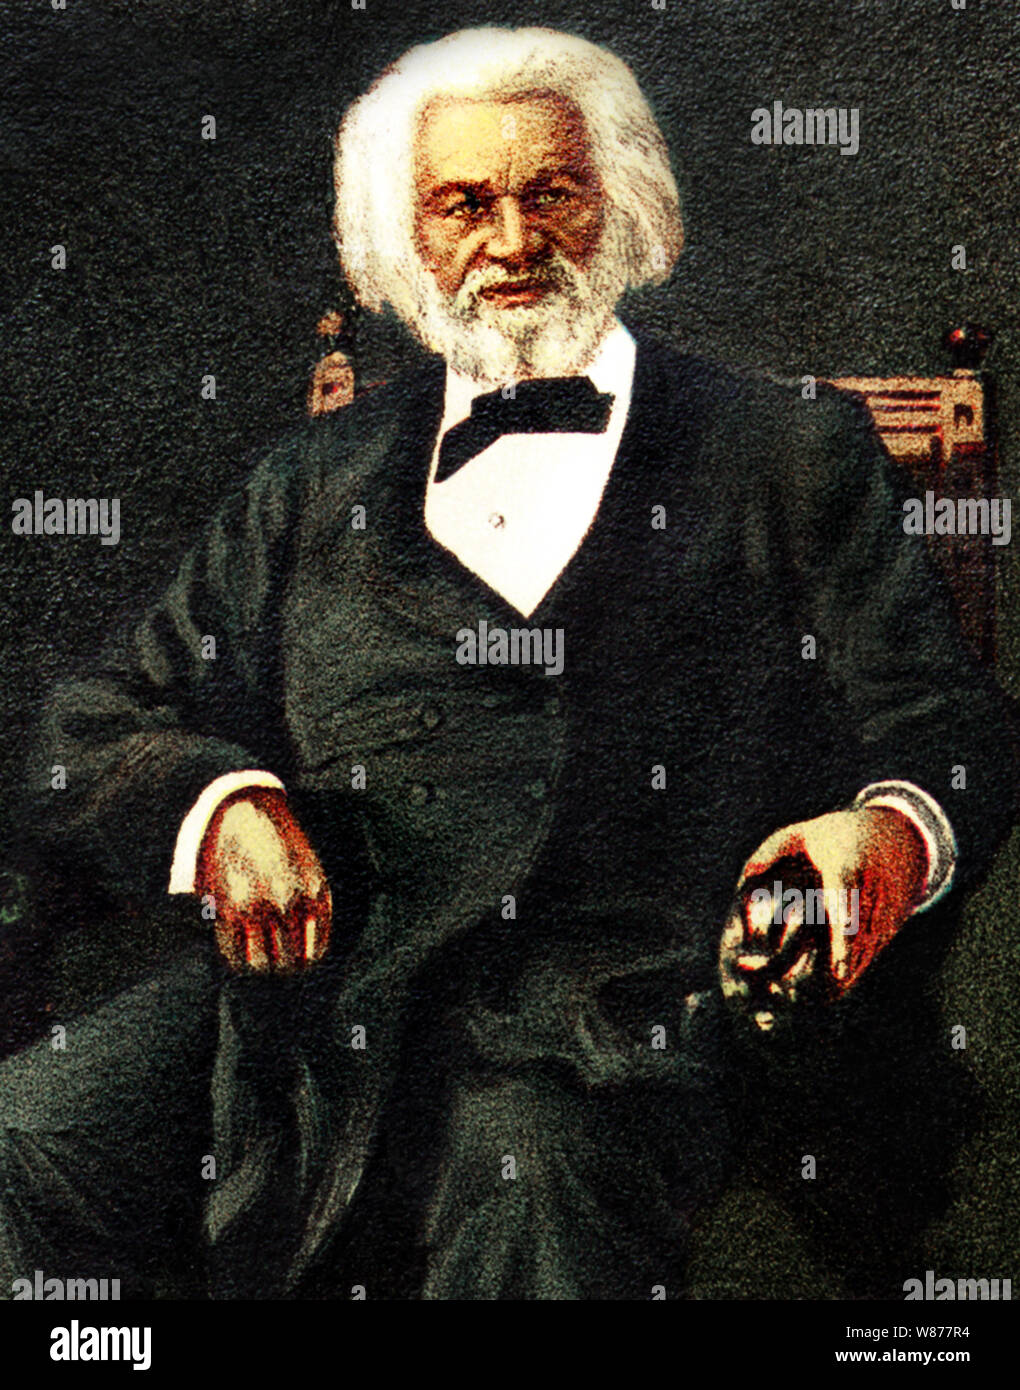 Colore Vintage ritratto di American riformista sociale, verità, oratore e scrittore e statista Frederick Douglass (nato Frederick Augustus Washington Bailey) c1818 - 1895). Foto Stock